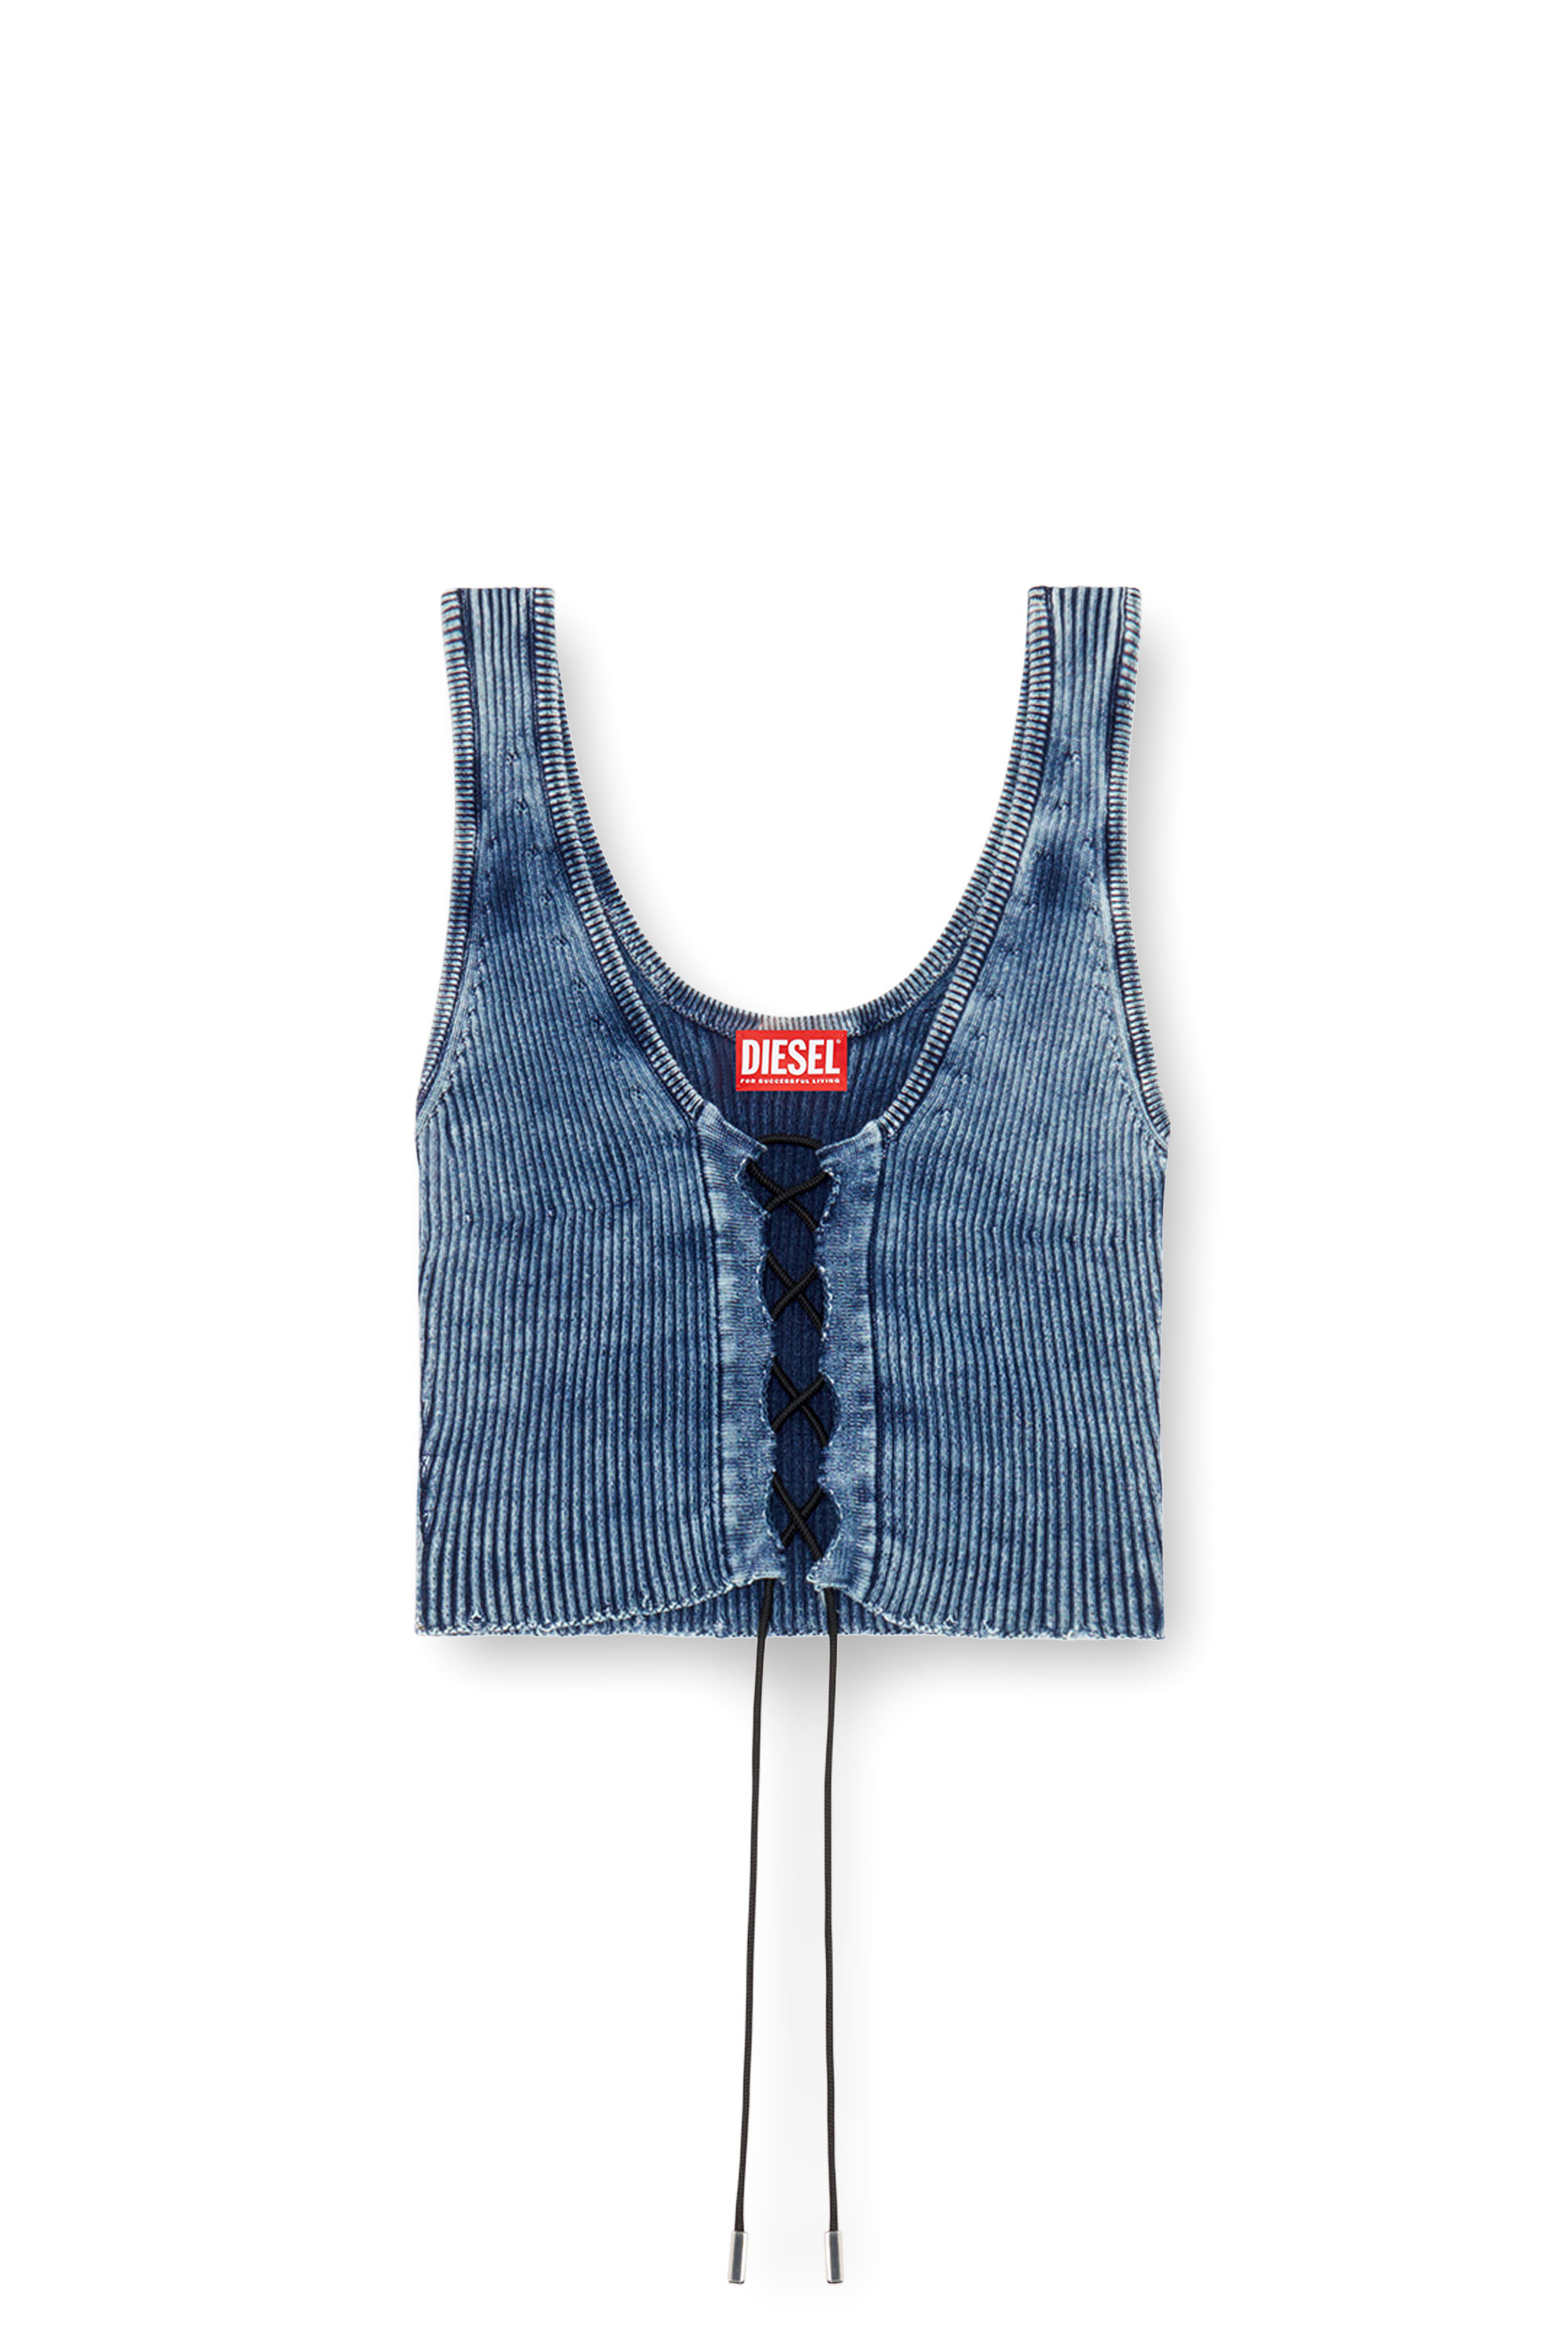 Diesel - M-ADONE, Mujer Camiseta sin mangas recortada con cordones en tejido índigo in Azul marino - Image 5